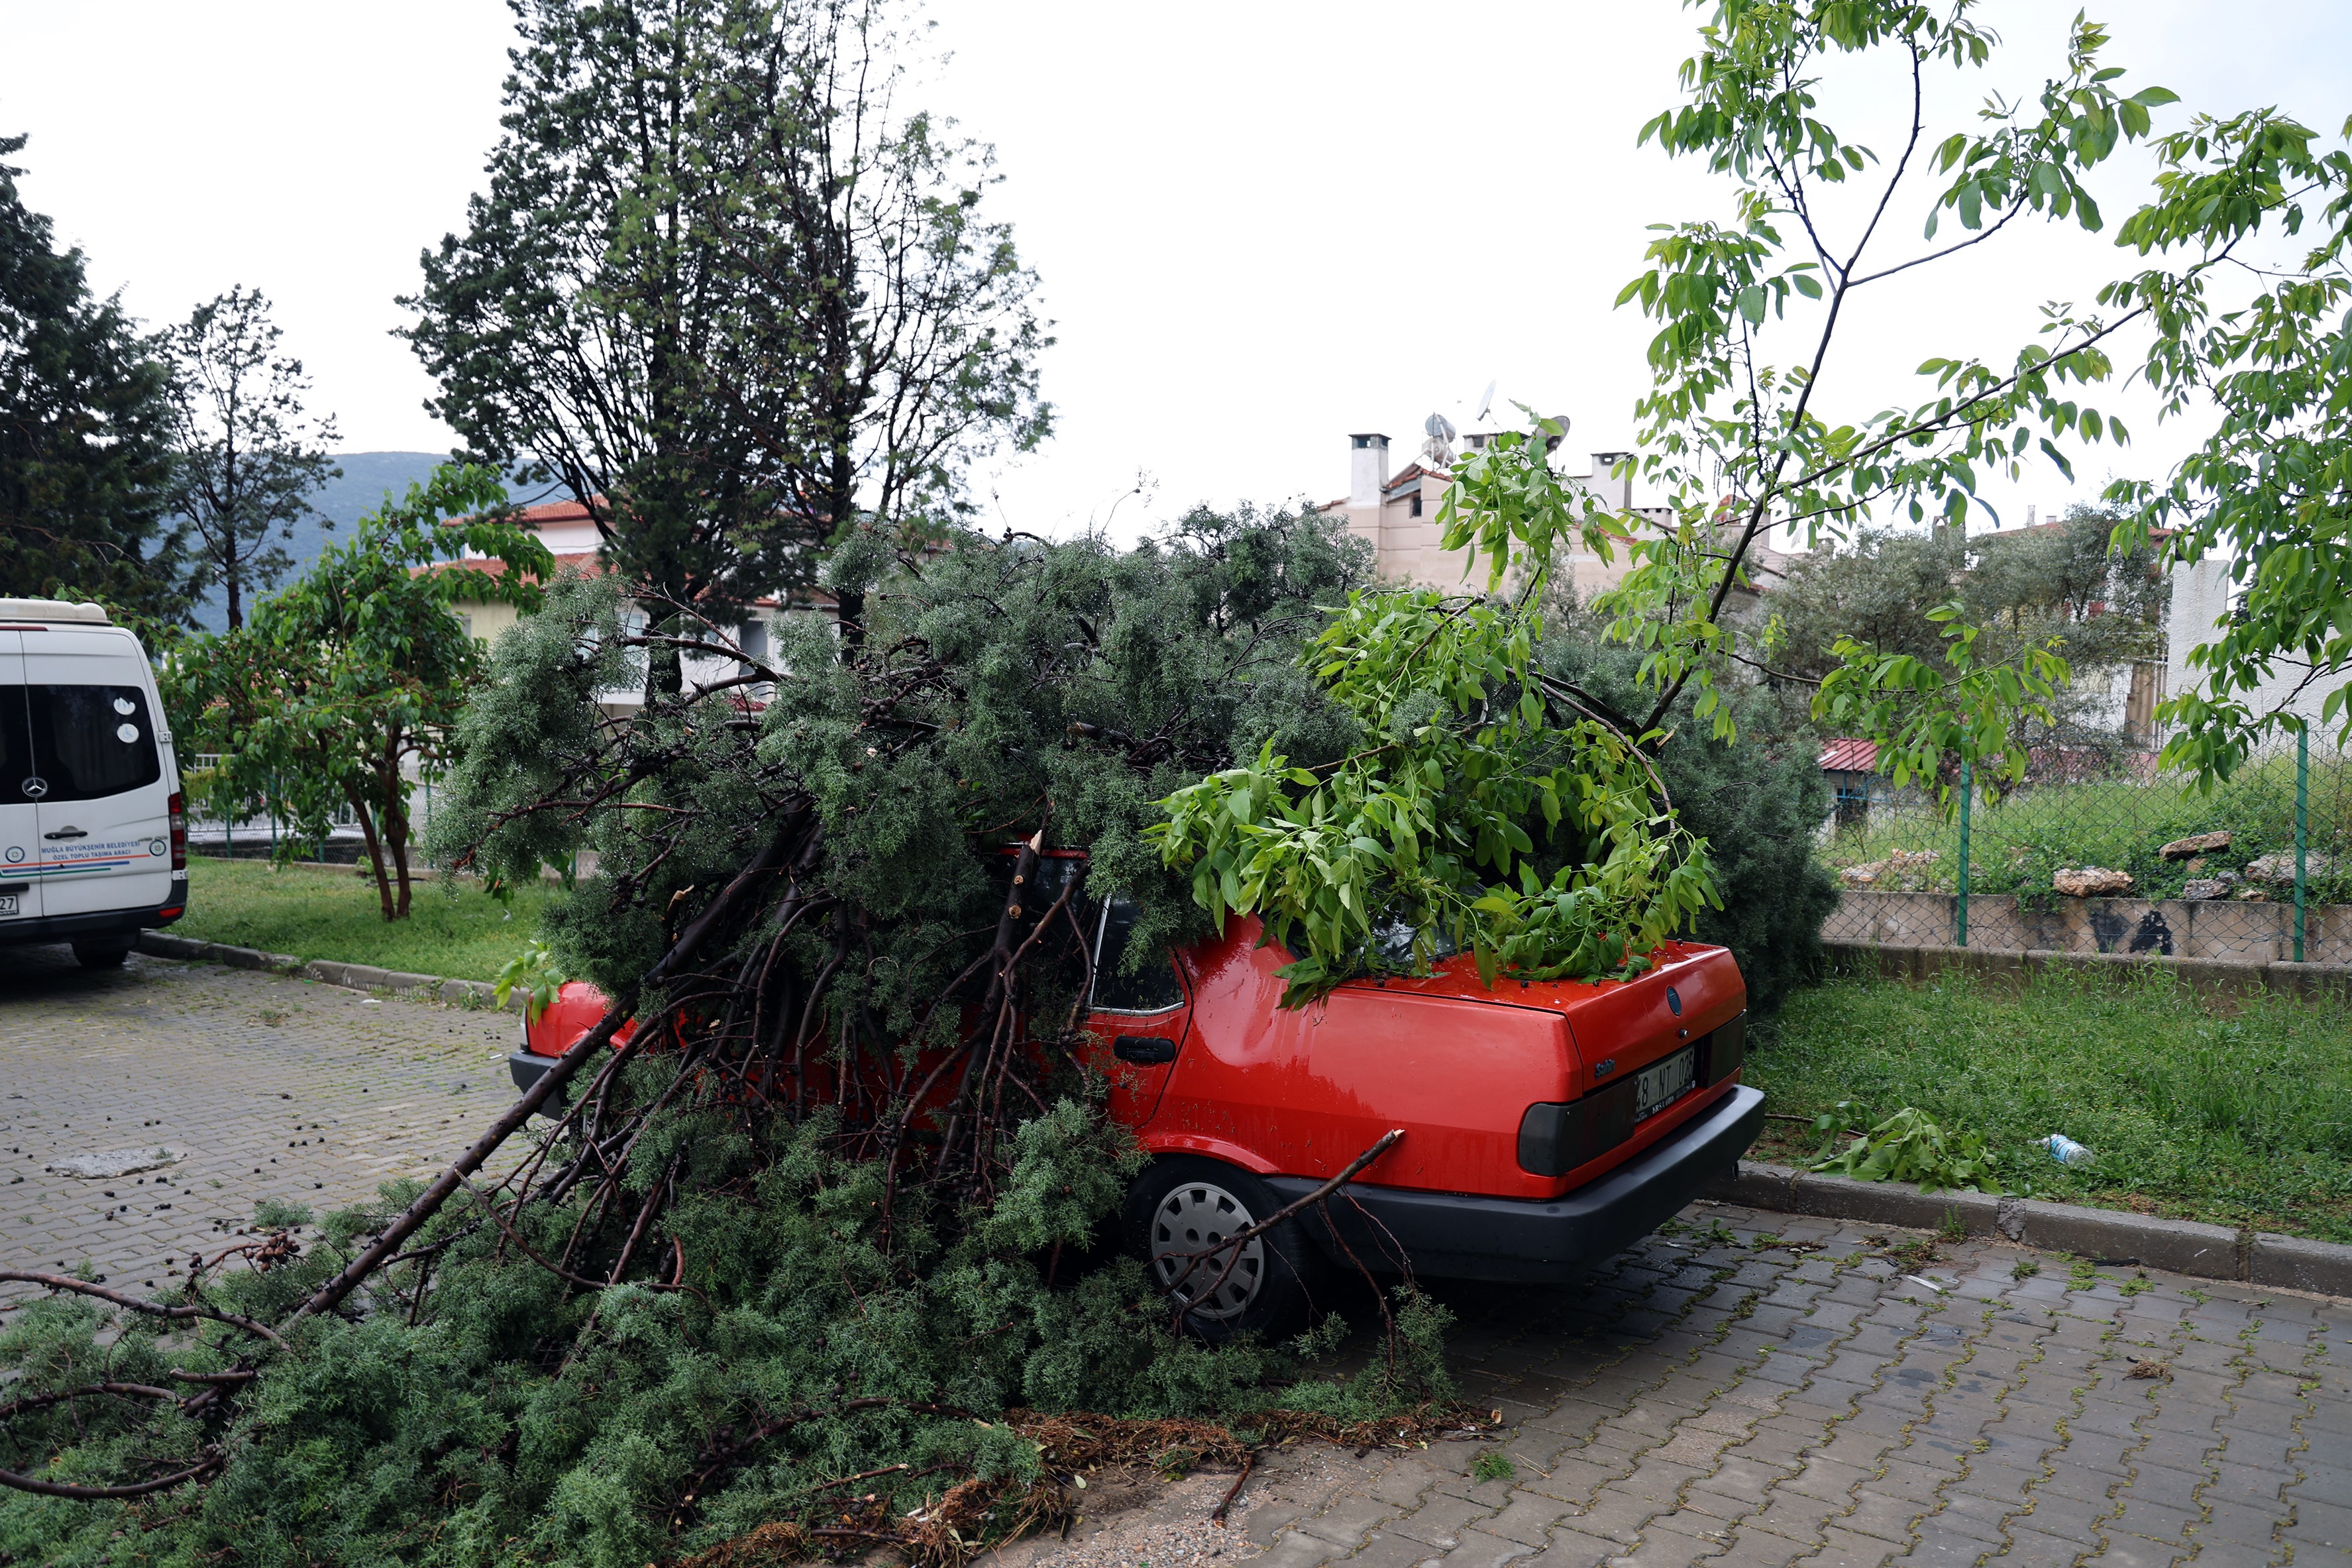 Şiddetli fırtına nedeniyle ağaç aracın üzerine devrildi